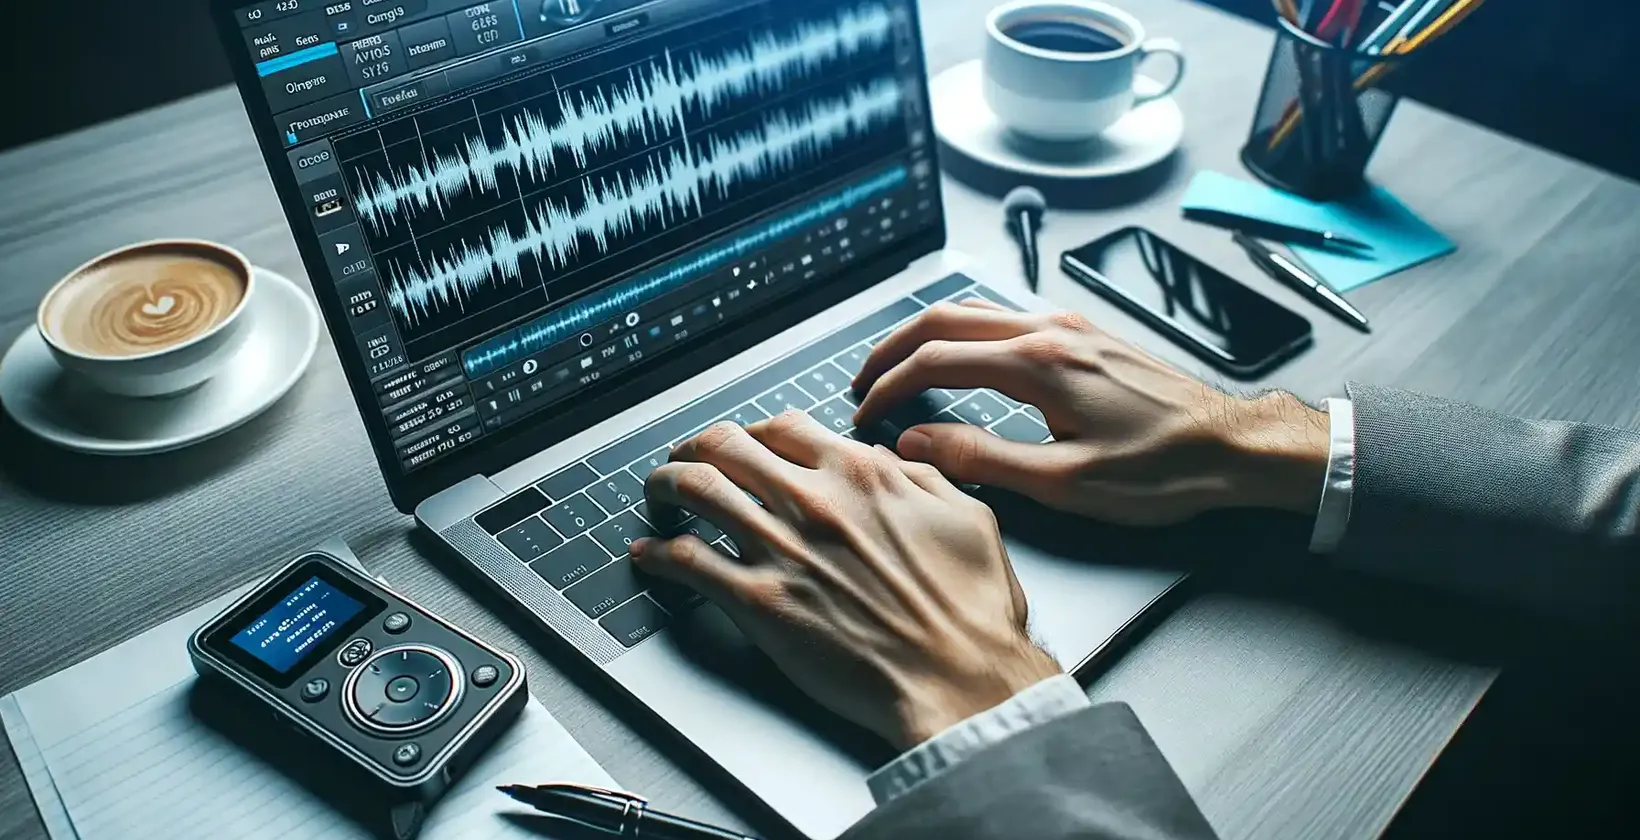 Setarea OPUS-to-text arată un birou cu un laptop, un cappuccino și un înregistrator digital de voce care afișează tipul de fișier OPUS